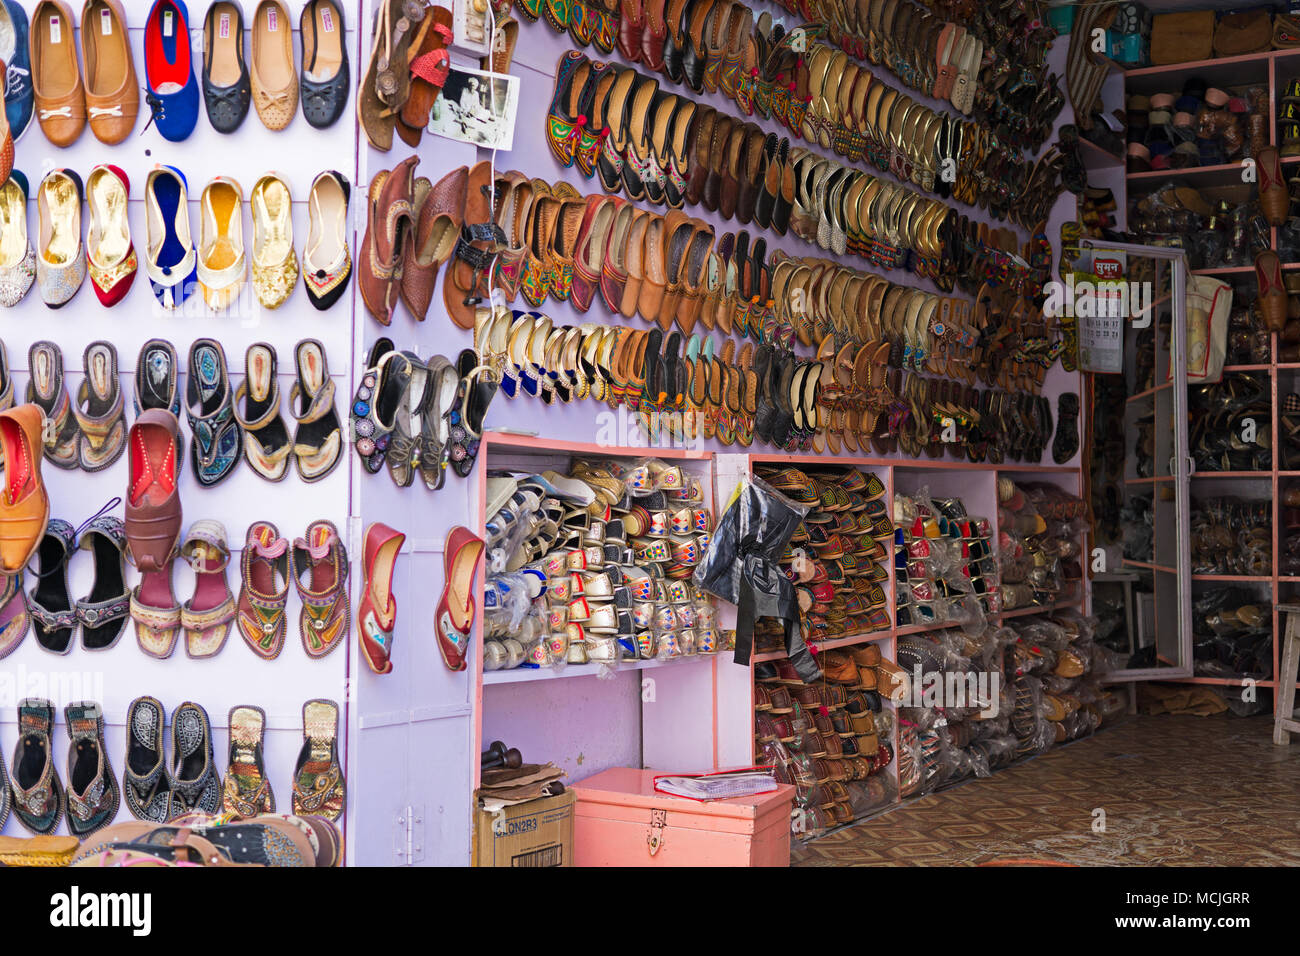 Mandawa, India - 24 Febbraio 2018: Scarpa negozio con scarpe colorati visualizzati nella città di Mandawa, Rajasthan. Foto Stock